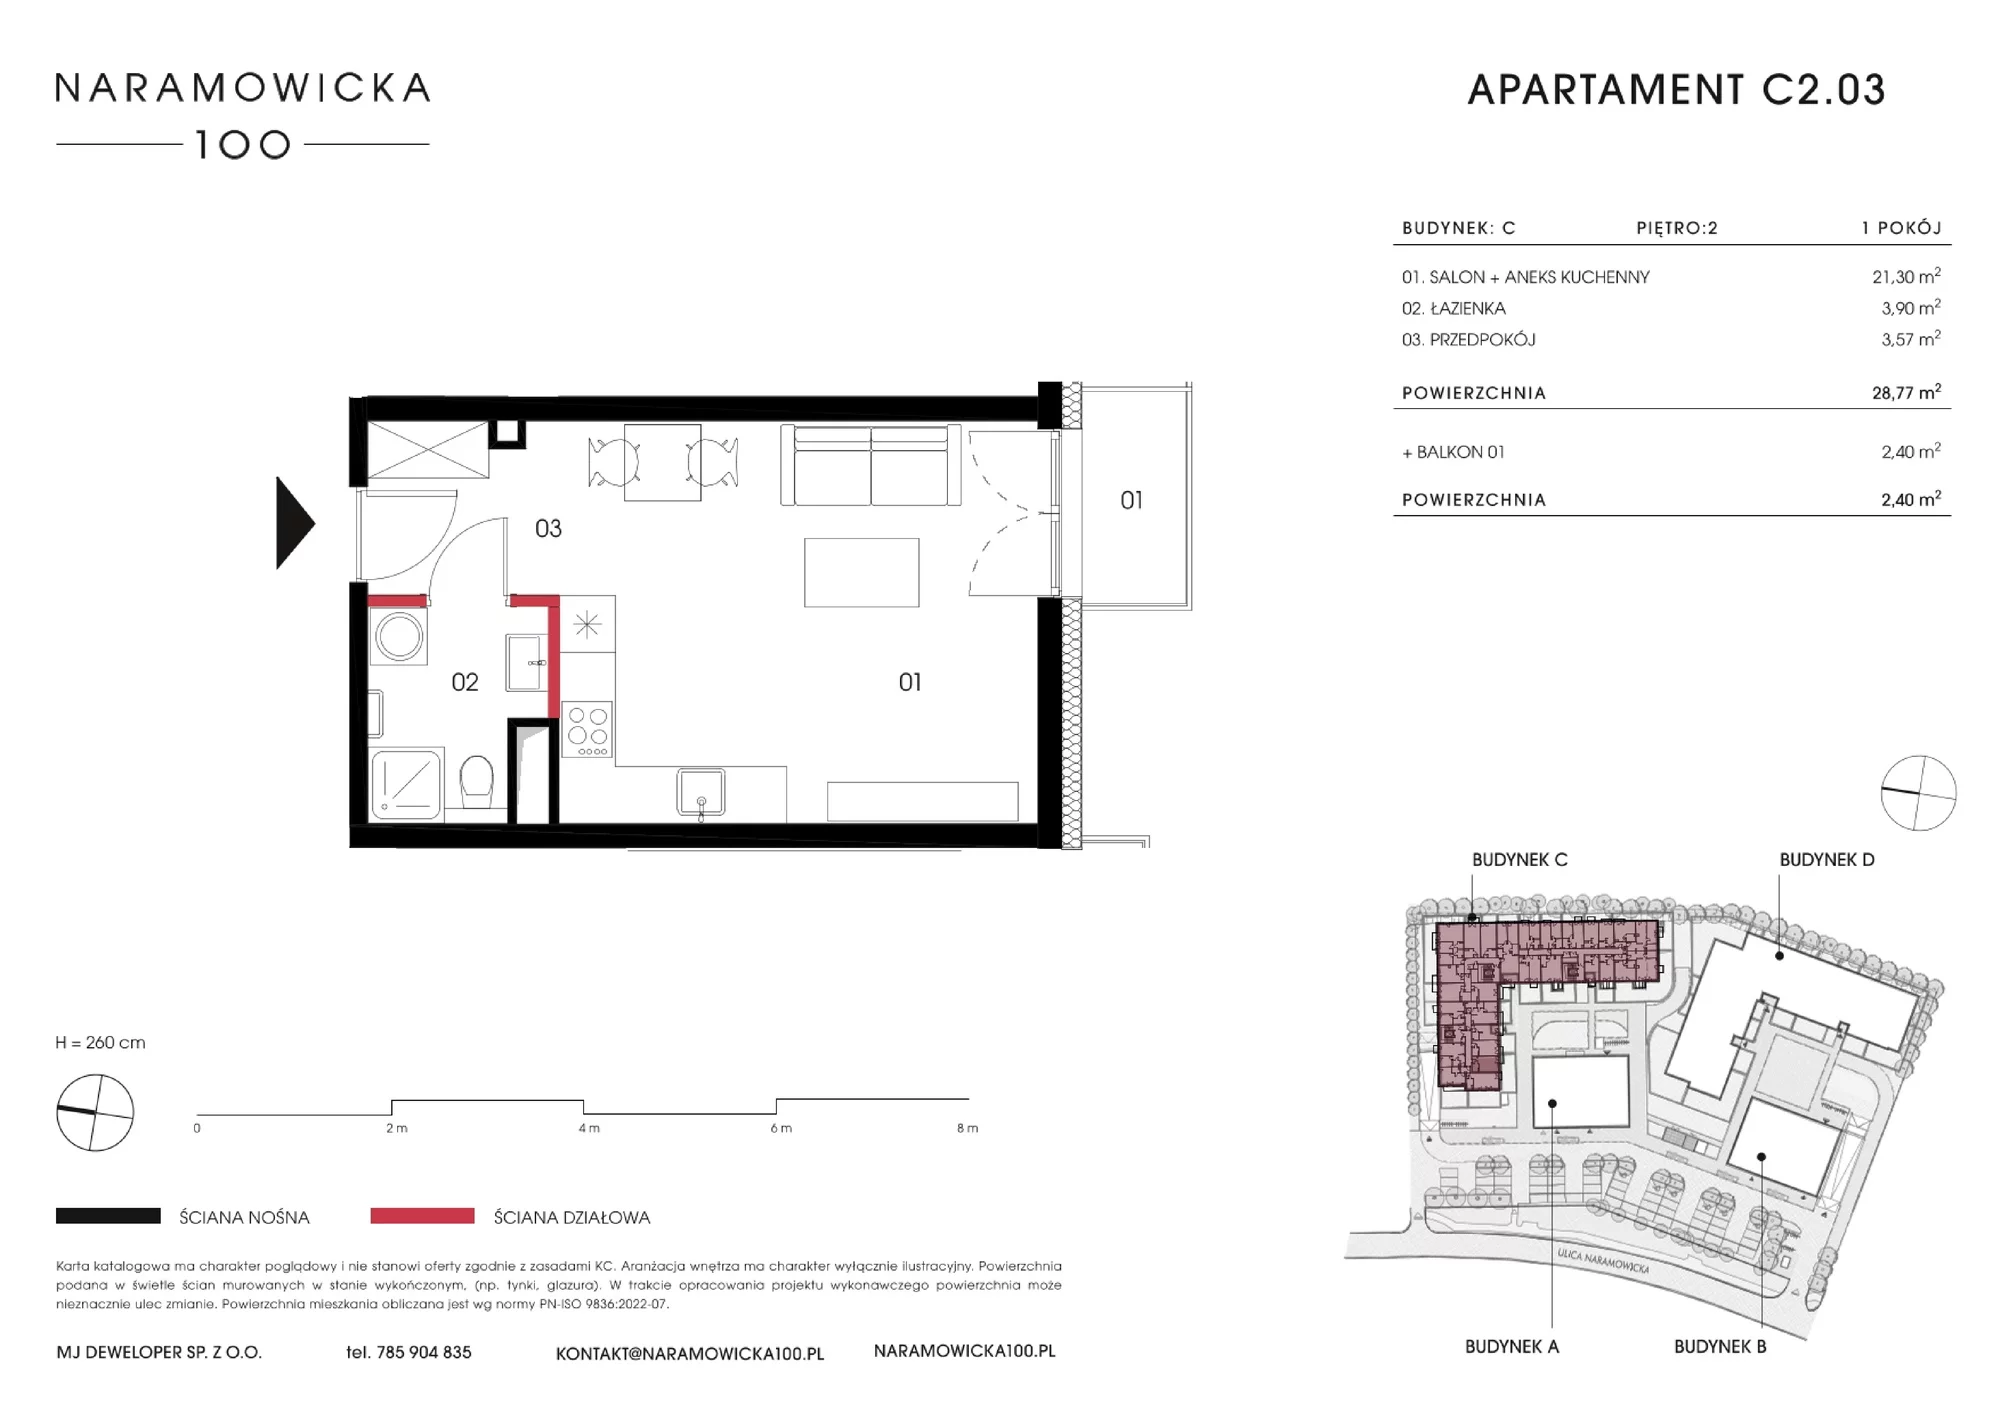 Mieszkanie 28,72 m², piętro 2, oferta nr C 2.03, Naramowicka, Poznań, Winogrady, Winogrady, ul. Naramowicka 100